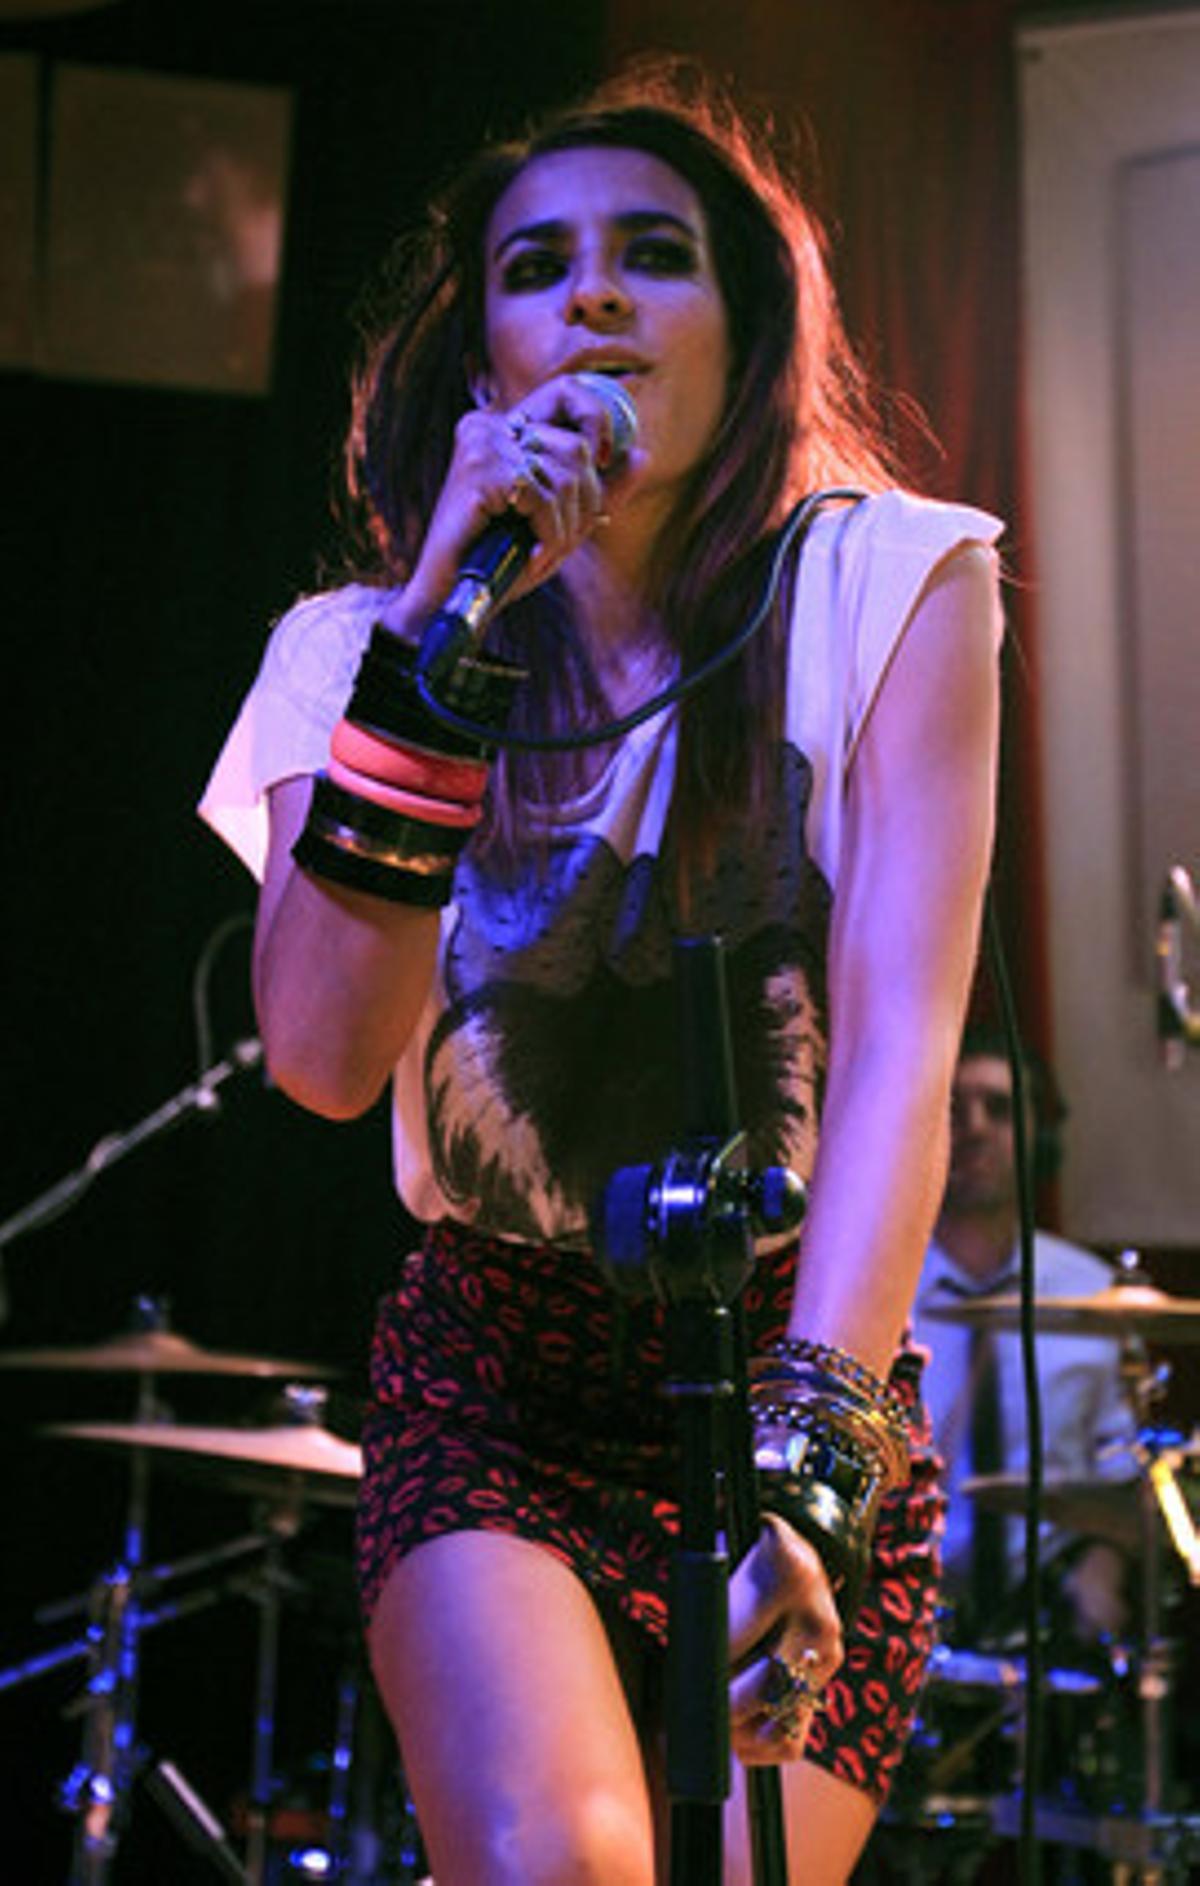 La cantante extremeña Bebe durante el concierto de presentación de su nuevo disco el 29 de noviembre en Madrid.